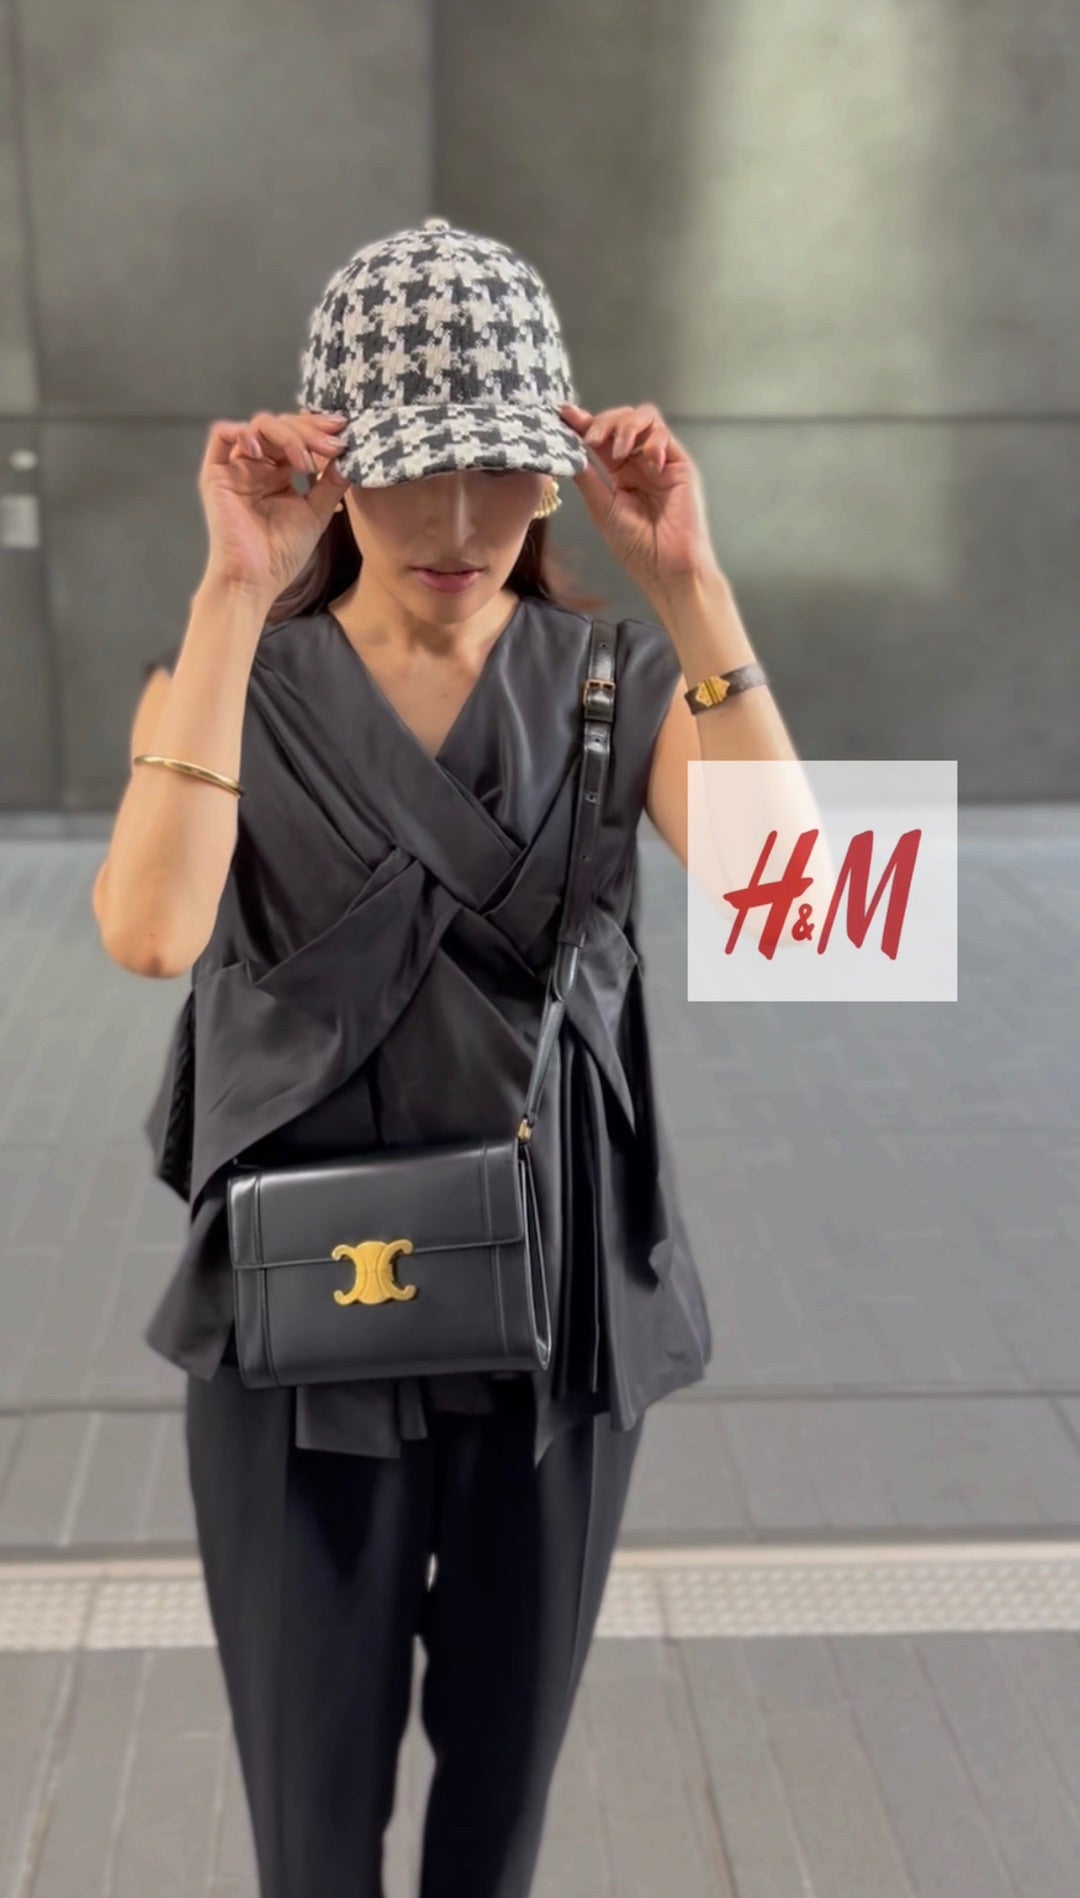 秋物購入 H&M | Ayaオフィシャルブログ「Ayanas Life」Powered by Ameba